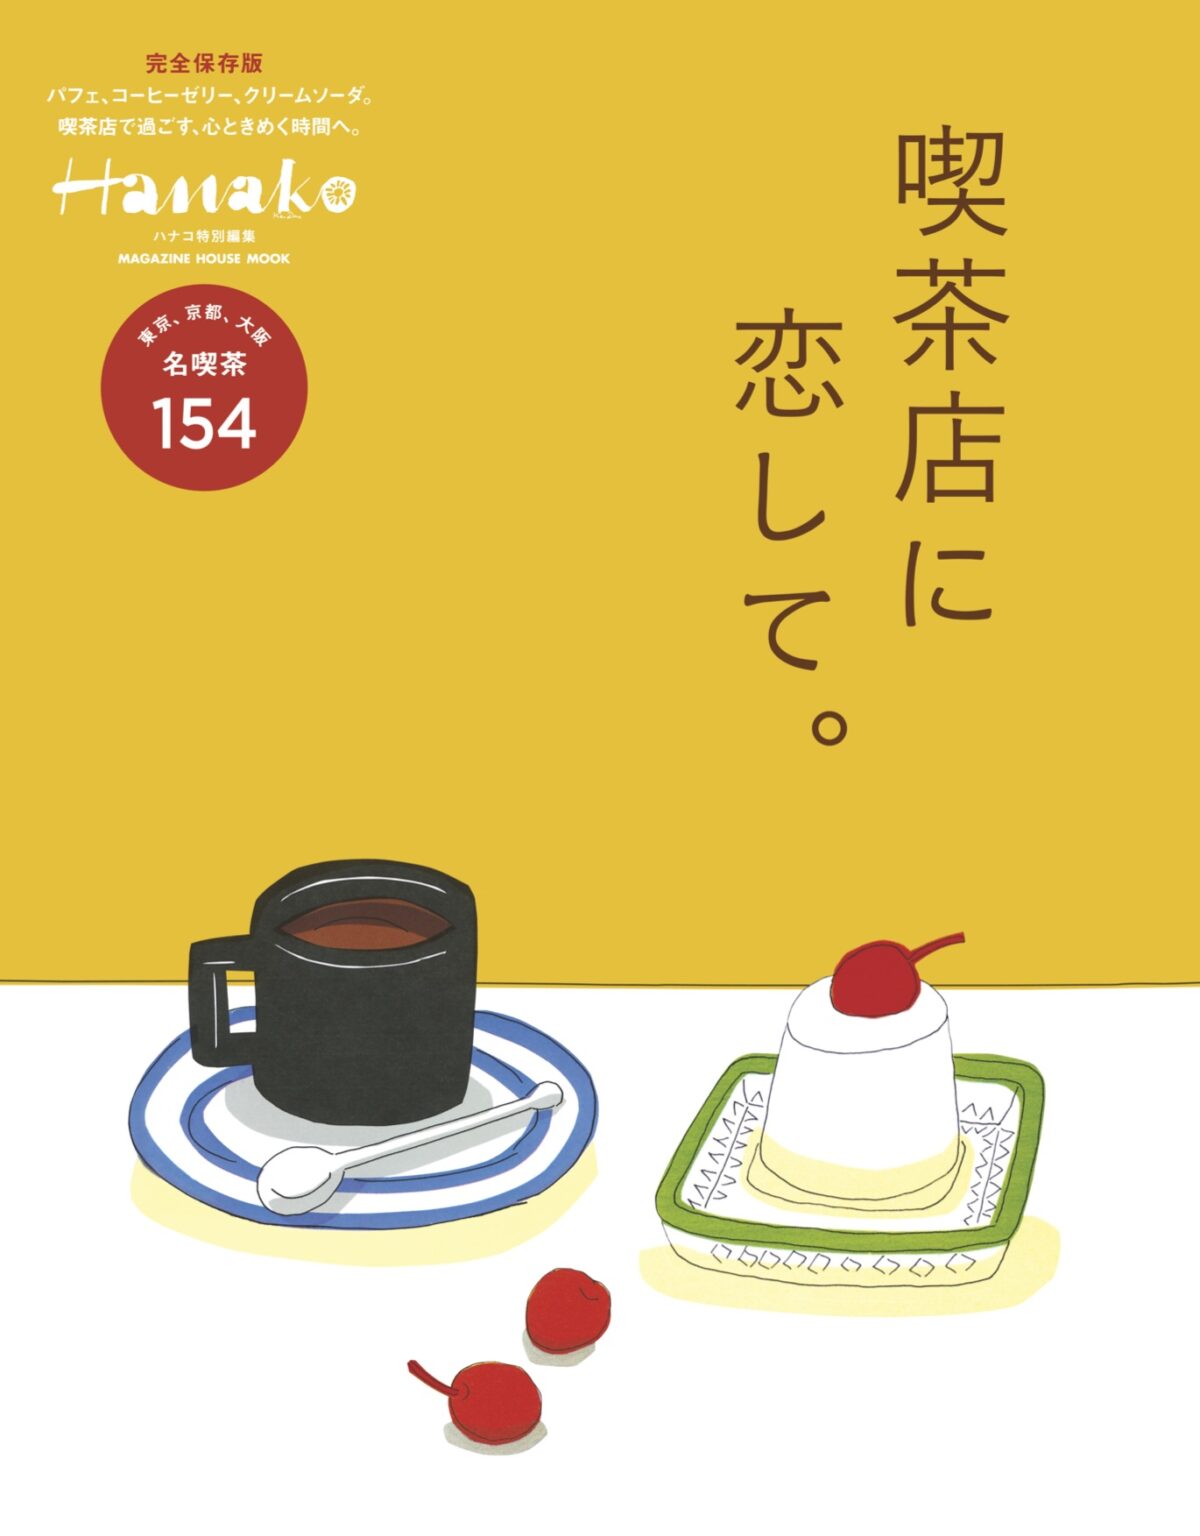 2018年　Hanako特別編集「喫茶店に恋して。」